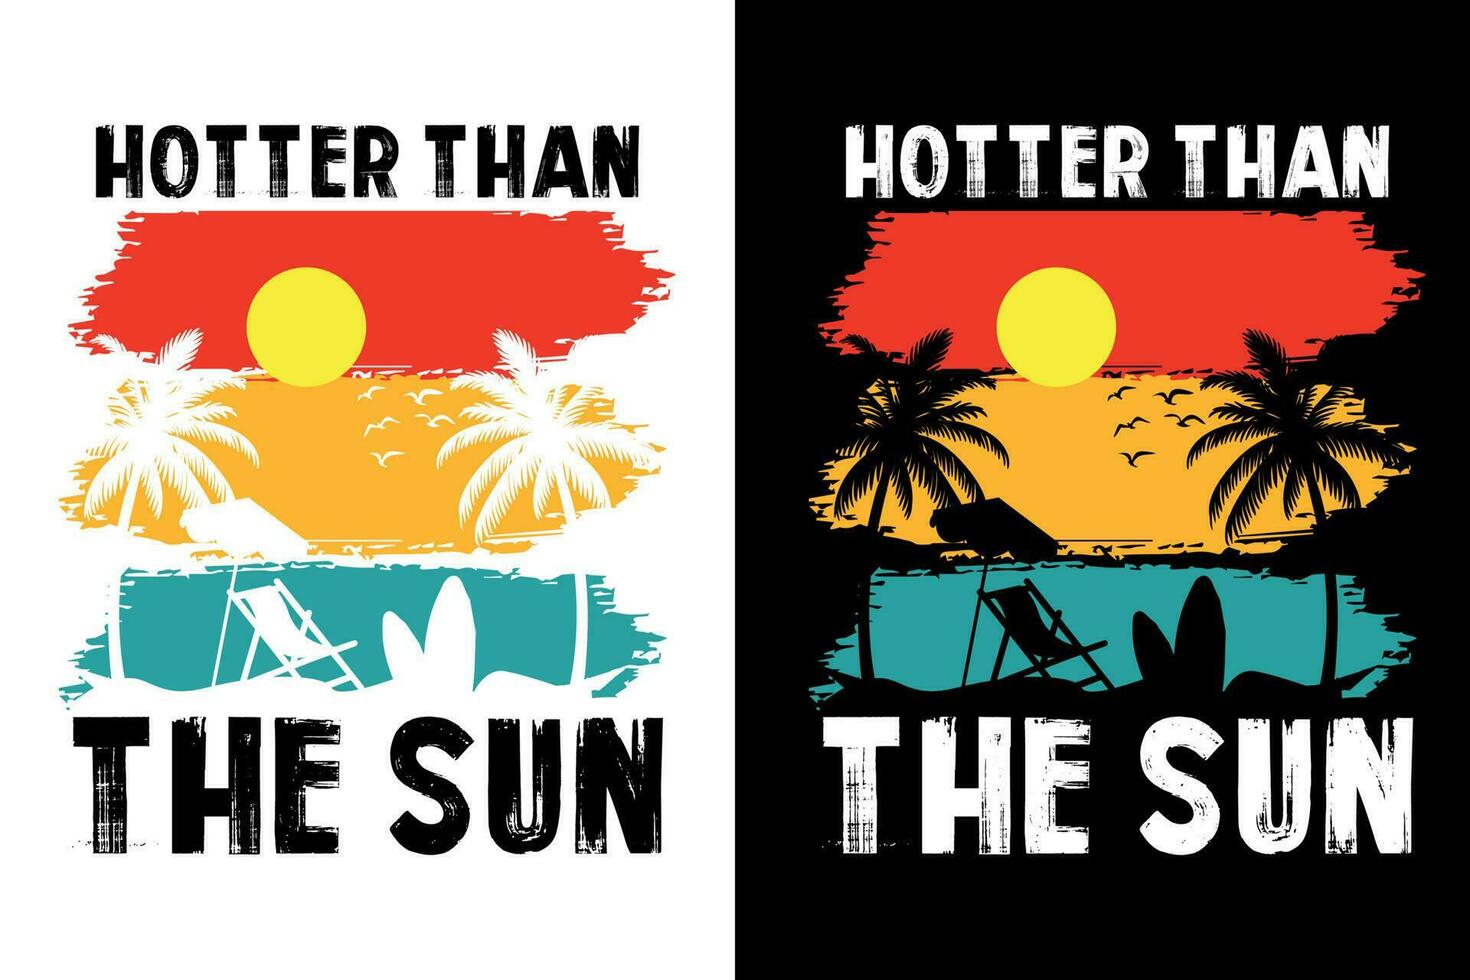 verano camiseta diseño manojo, verano playa vacaciones camisetas, verano surf camiseta vector diseño